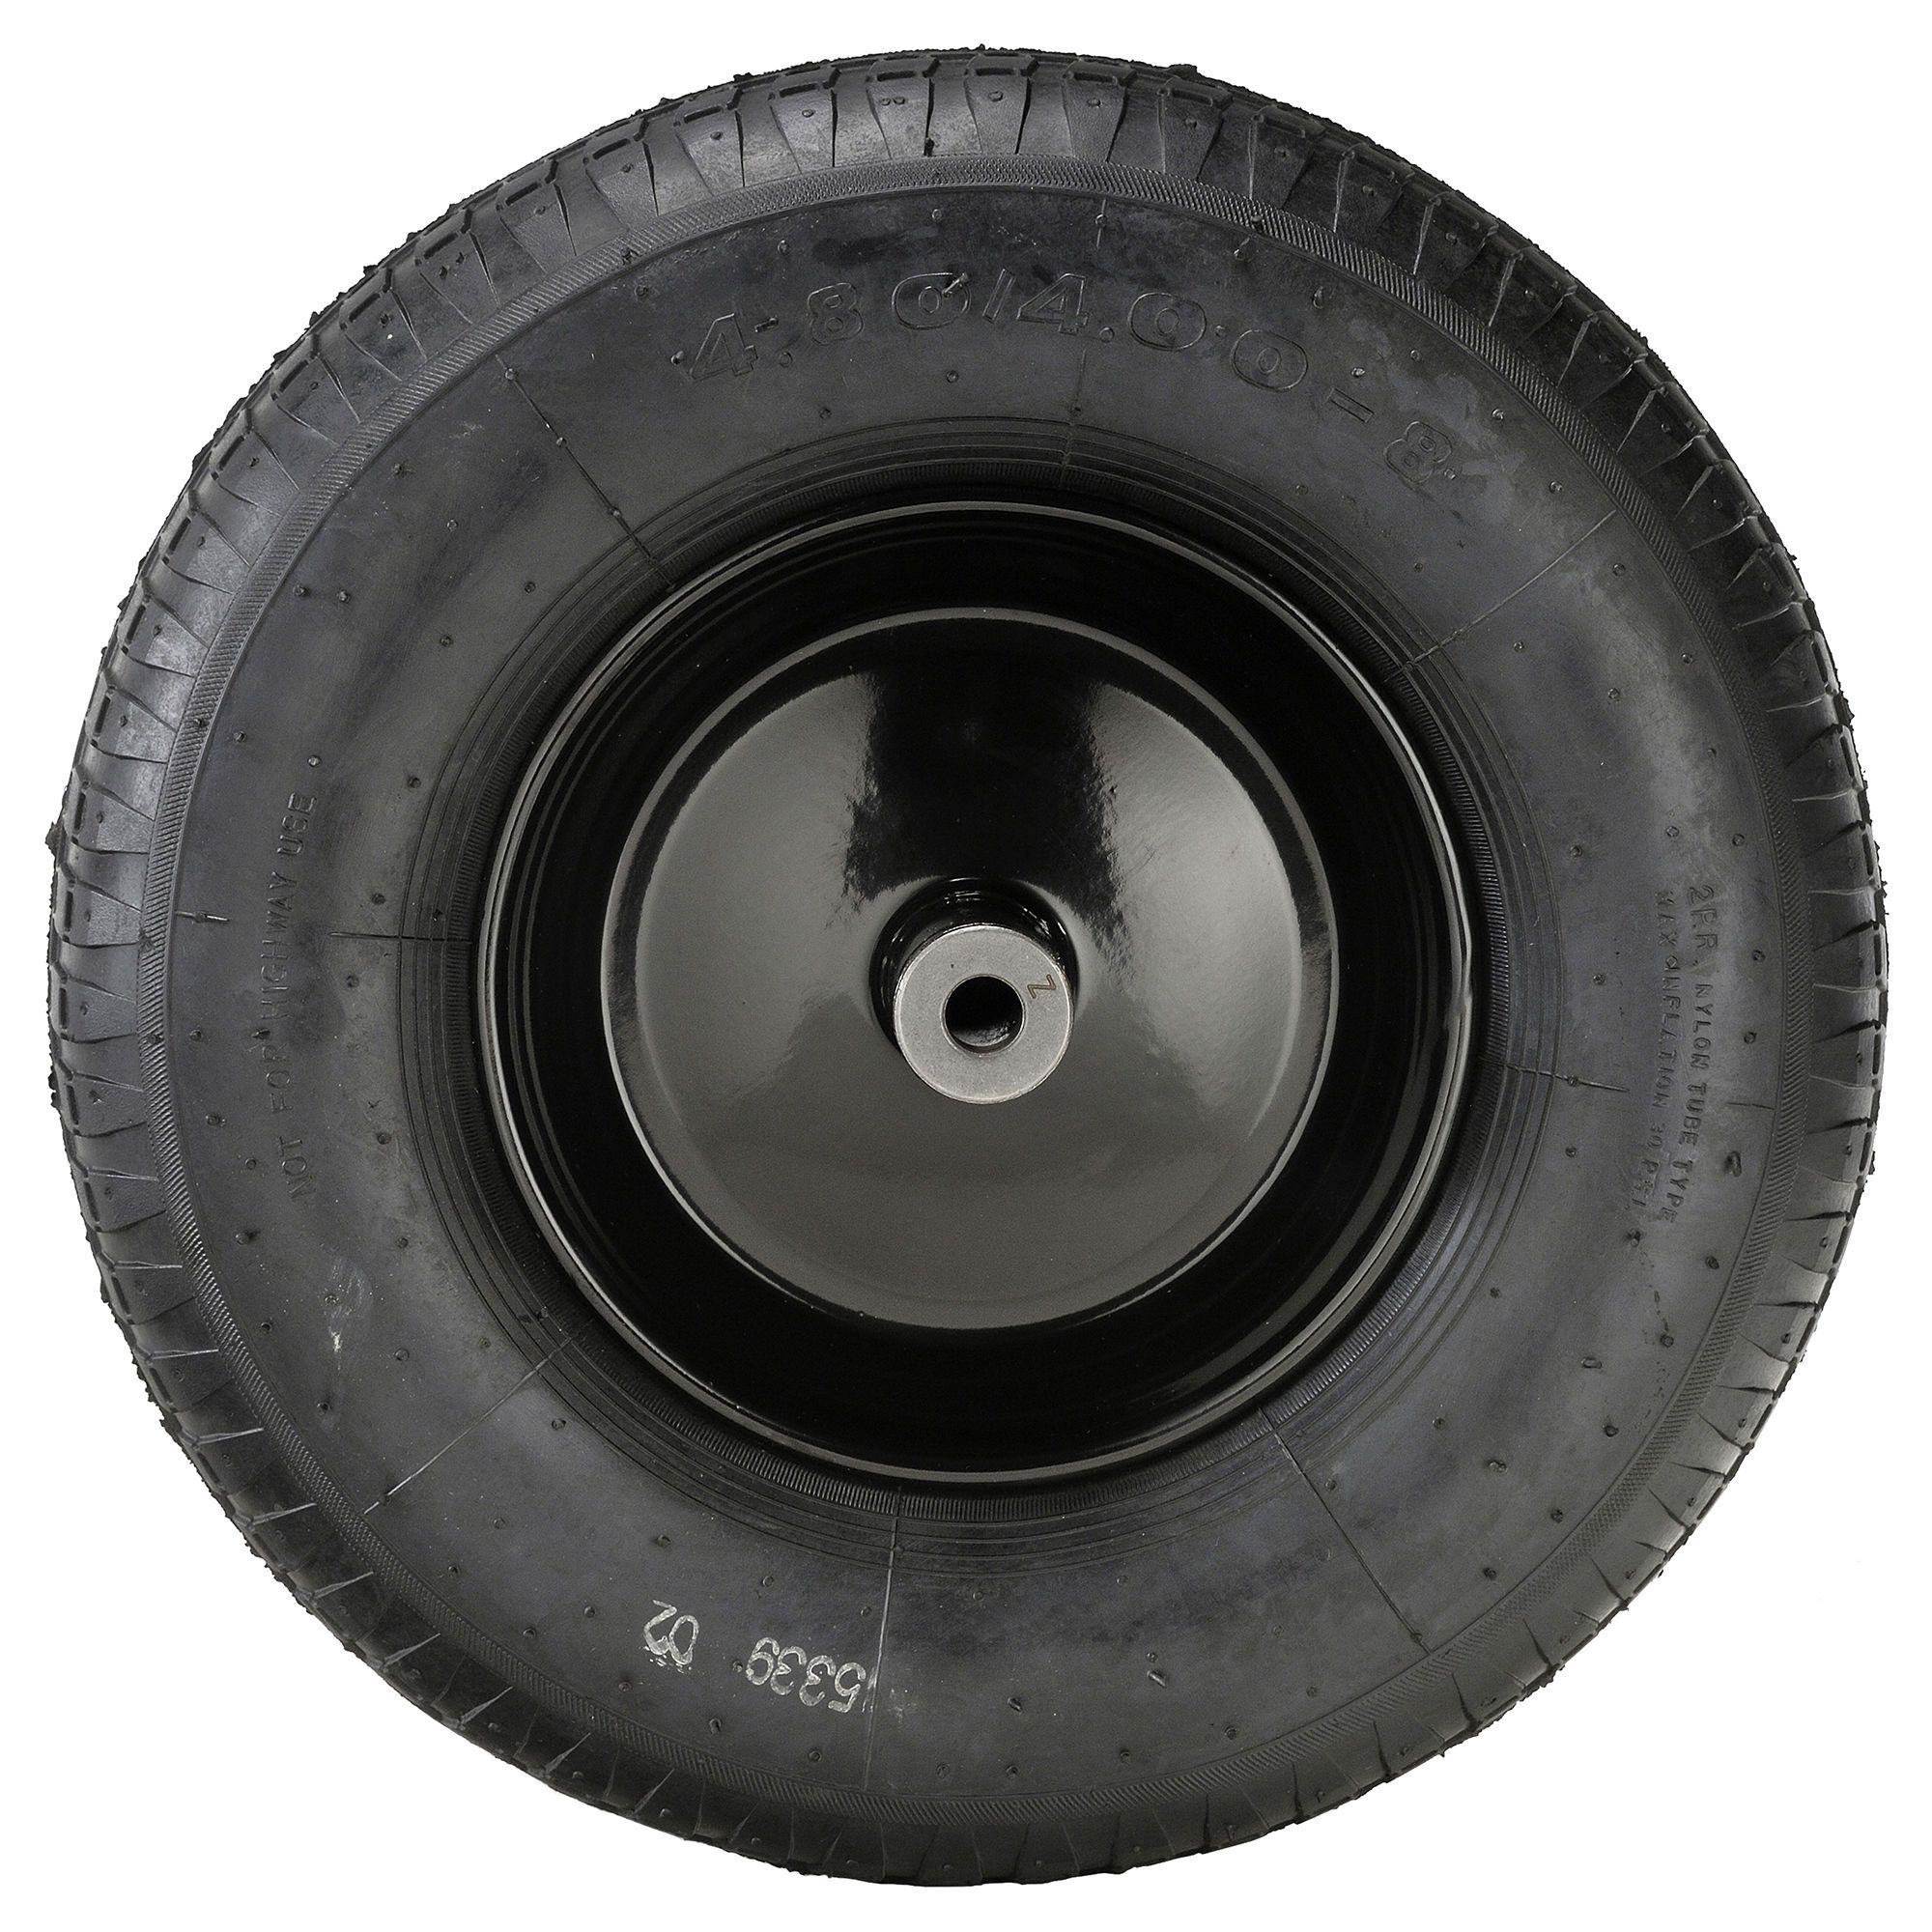 Ensemble de pneu de brouette, 4.10/3.50-4, pneu et roue à goujon 4PR 